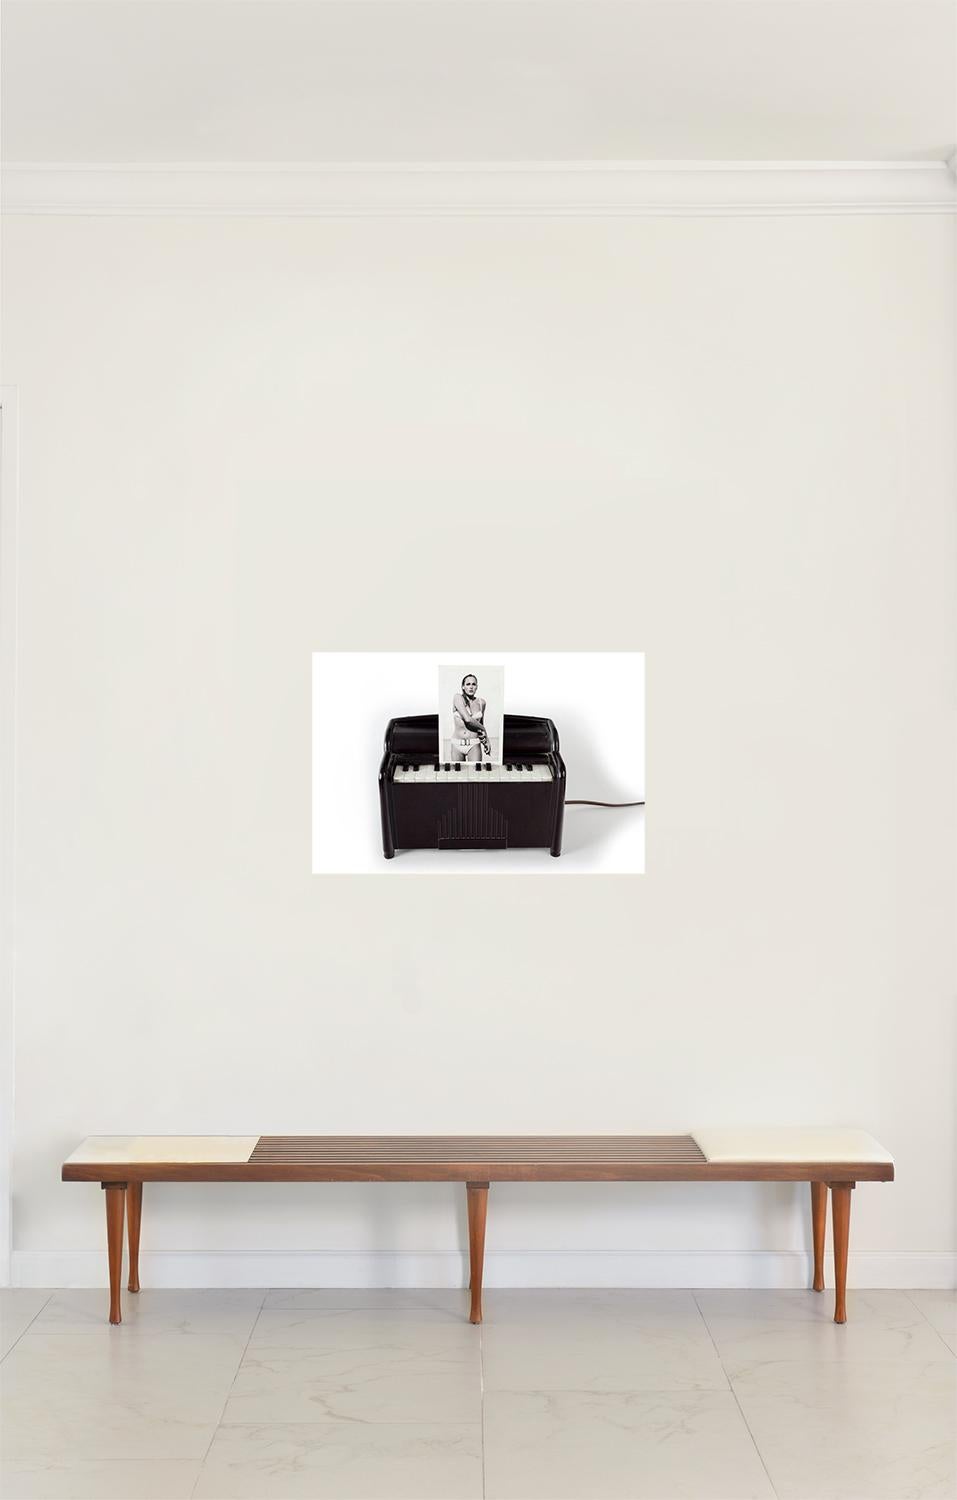 Klavier Ursula. Digitale Collage. Farbfotografie in limitierter Auflage (Grau), Portrait Photograph, von Paloma Castello